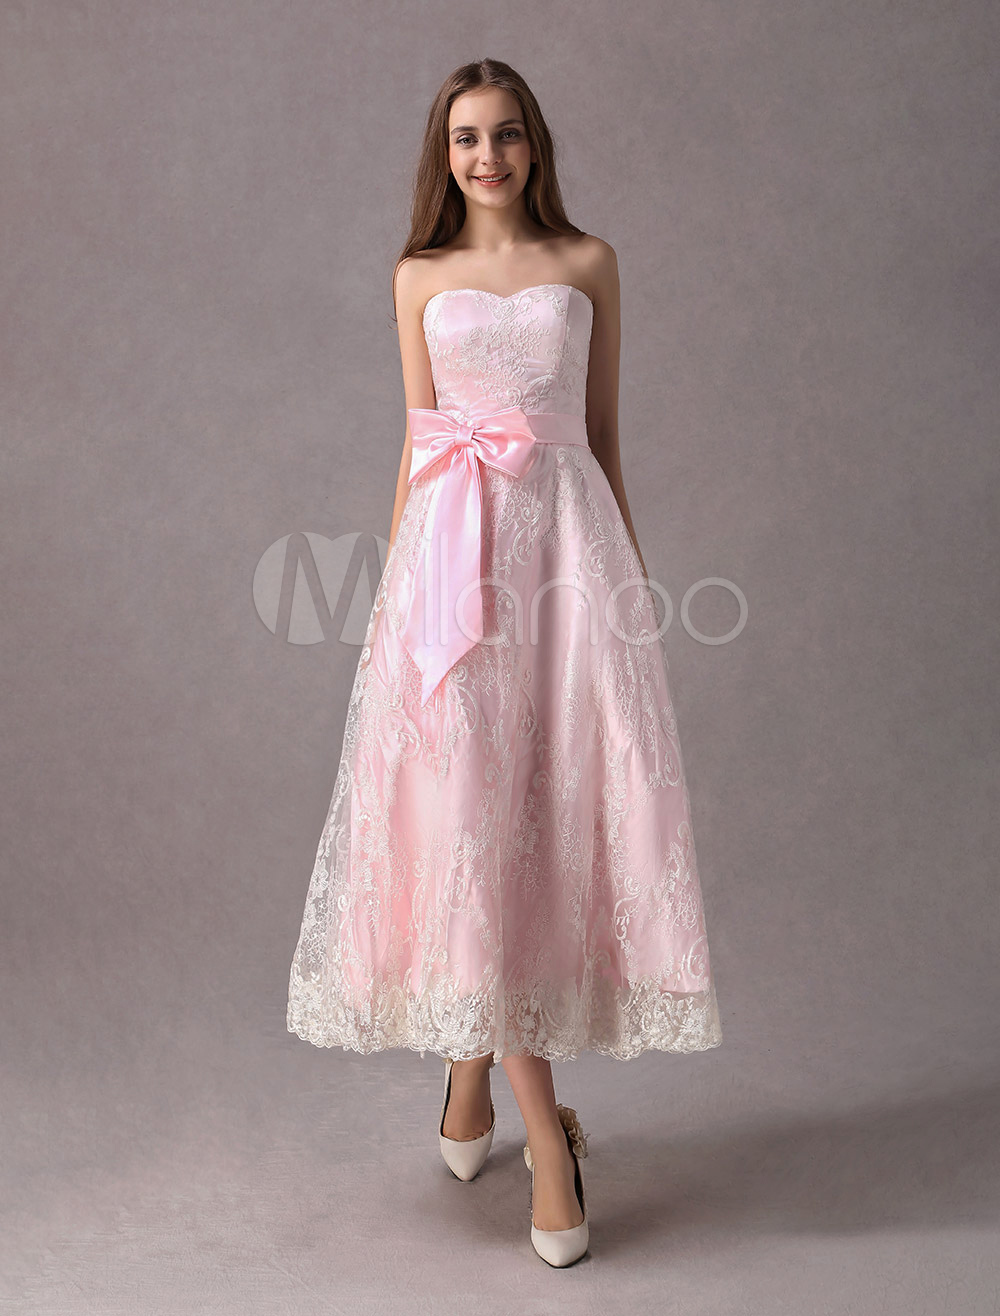 pink strapless dress short